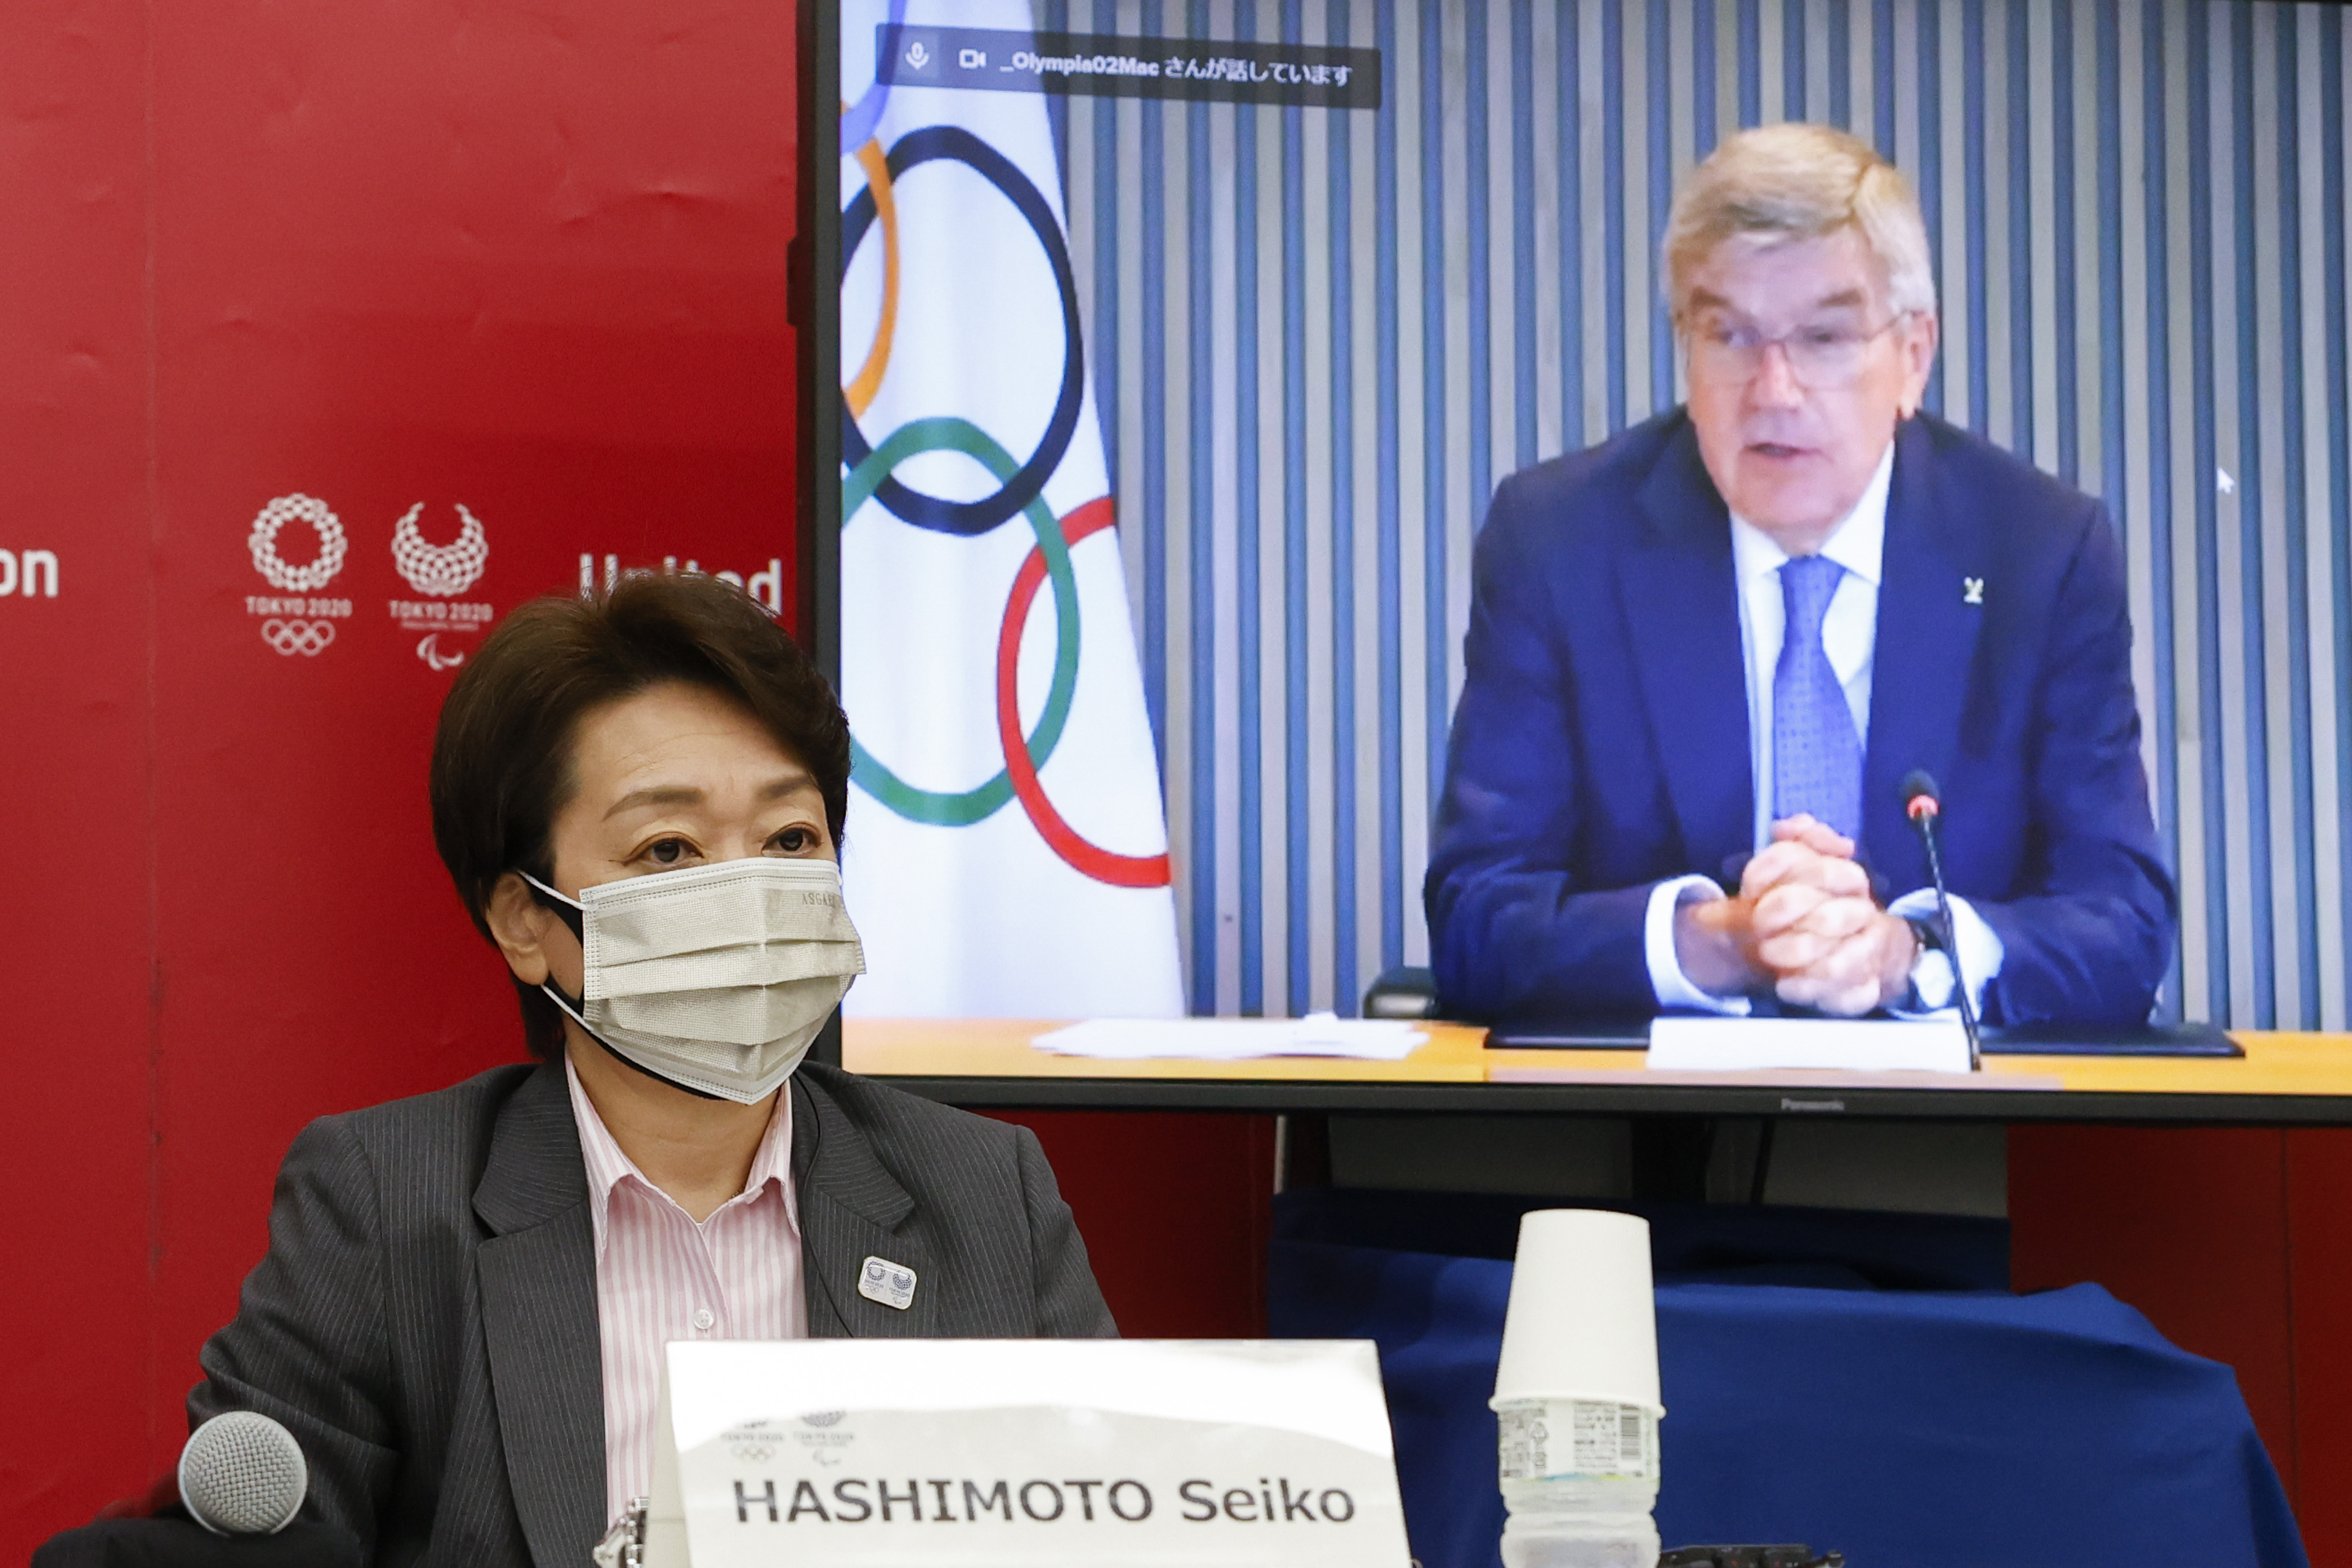 하시모토 세이코(왼쪽) 일본 도쿄올림픽·패럴림픽 조직위 회장과 토마스 바흐(오른쪽 화면) 국제올림픽위원회(IOC) 위원장이 6월 21일 도쿄에서 발언하고 있다.  〈도쿄=AP〉